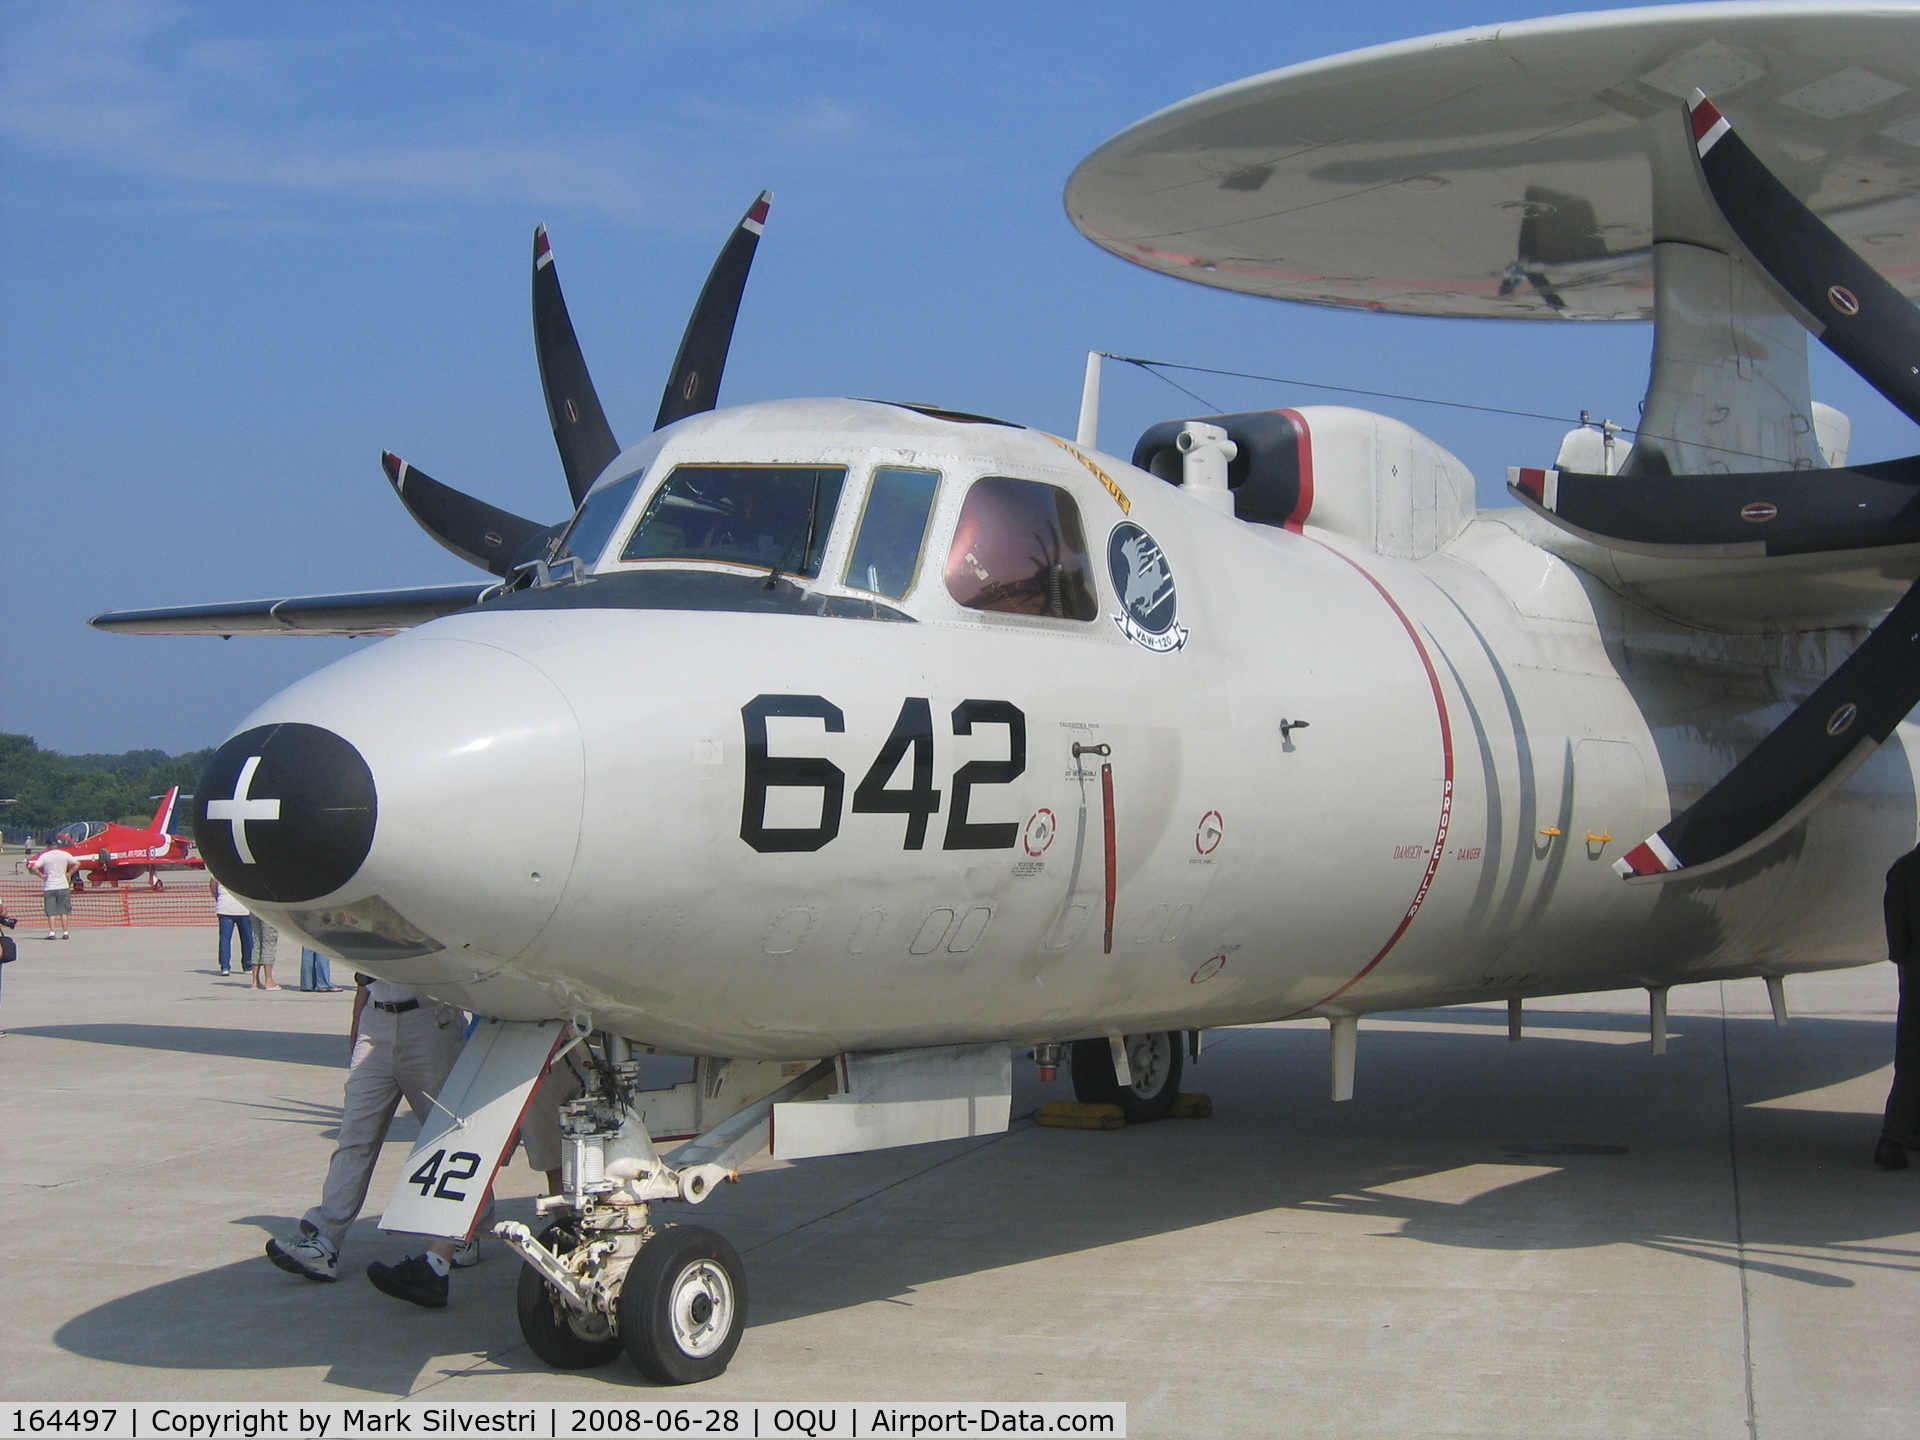 164497, Northrop Grumman E-2C Hawkeye C/N A163, Quonset Point 2008 - E-2C Hawkeye